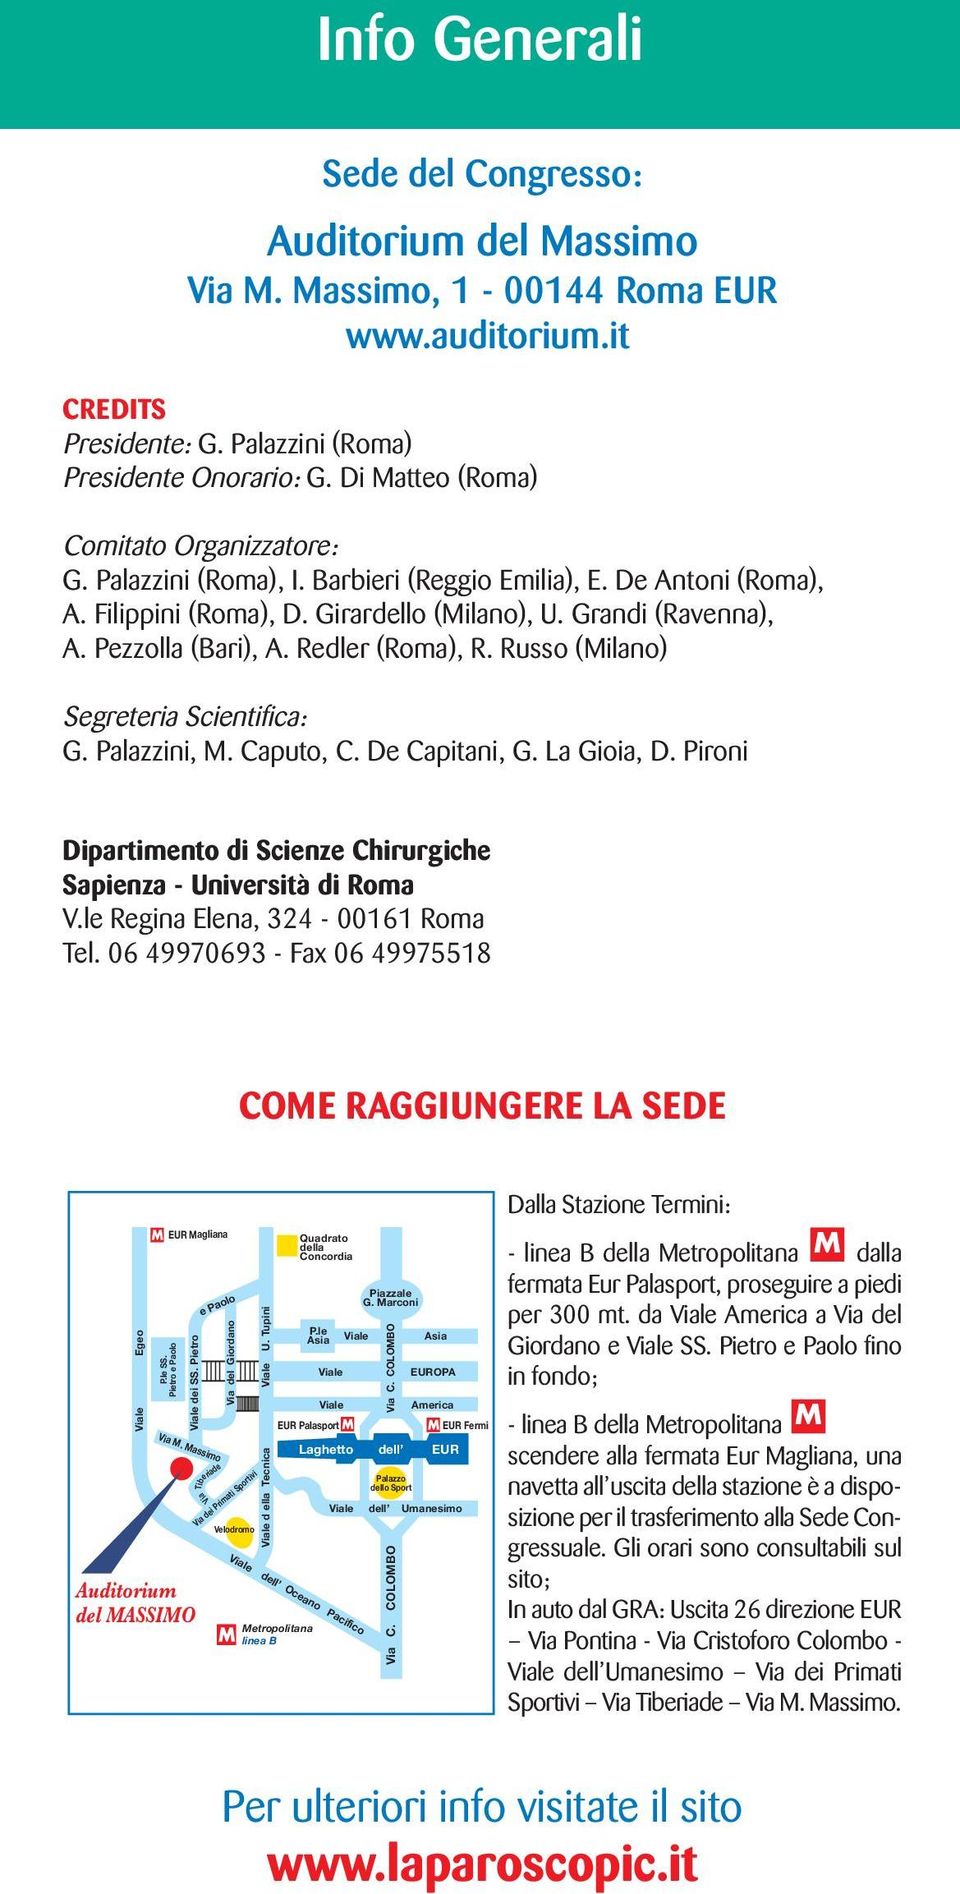 Redler (Roma), R. Russo (Milano) Segreteria Scientifica: G. Palazzini, M. Caputo, C. De Capitani, G. La Gioia, D. Pironi Dipartimento di Scienze Chirurgiche Sapienza - Università di Roma V.